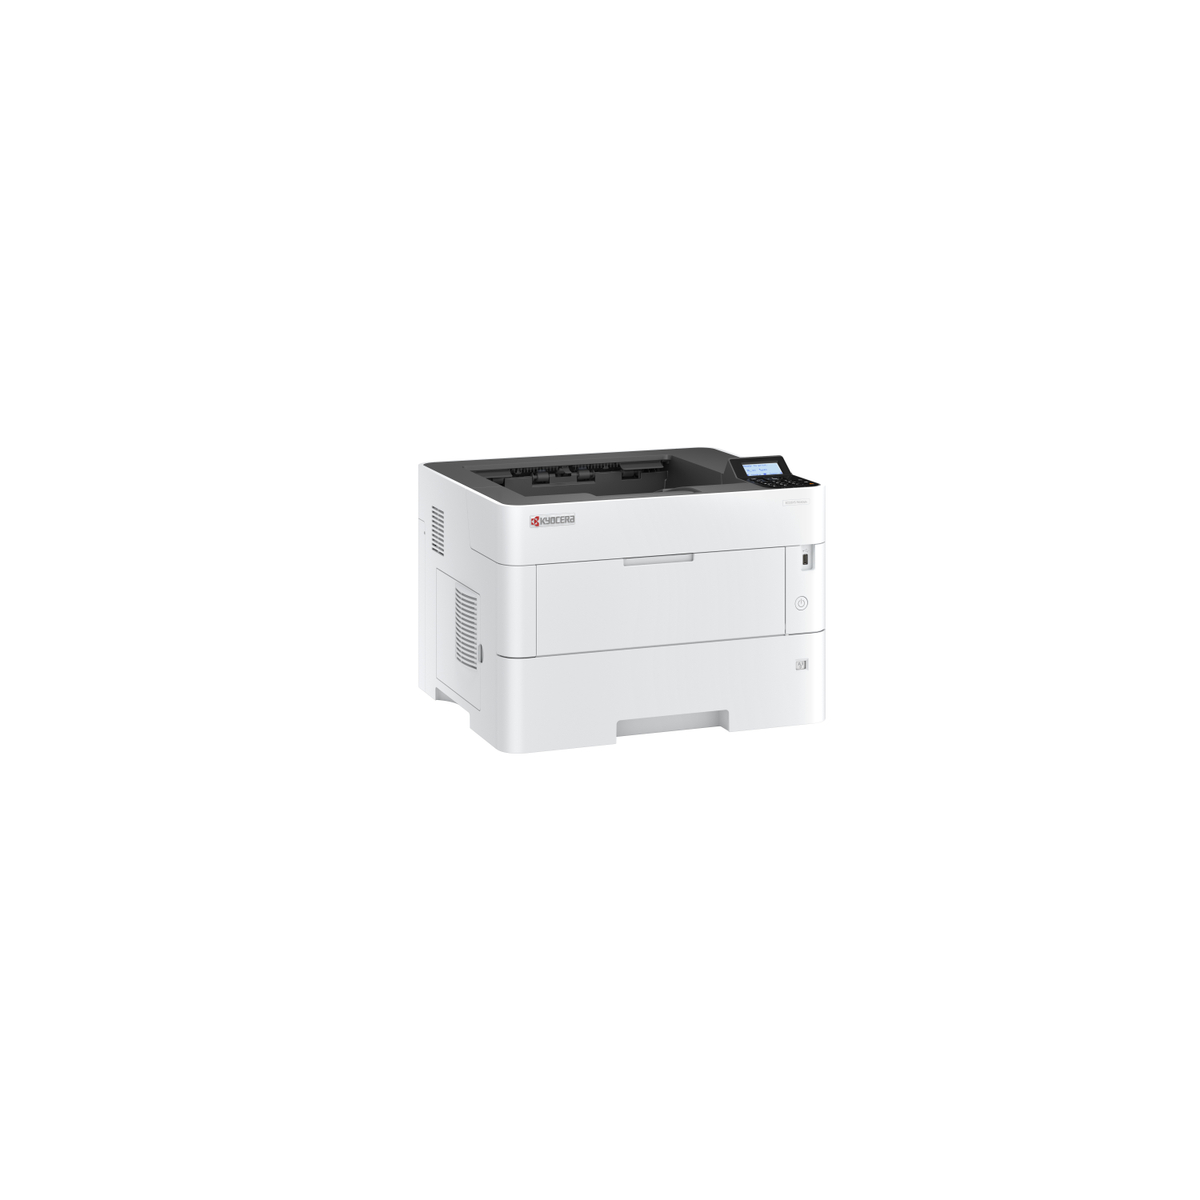 ECOSYS P4140dn A3 Mono Laser Printer